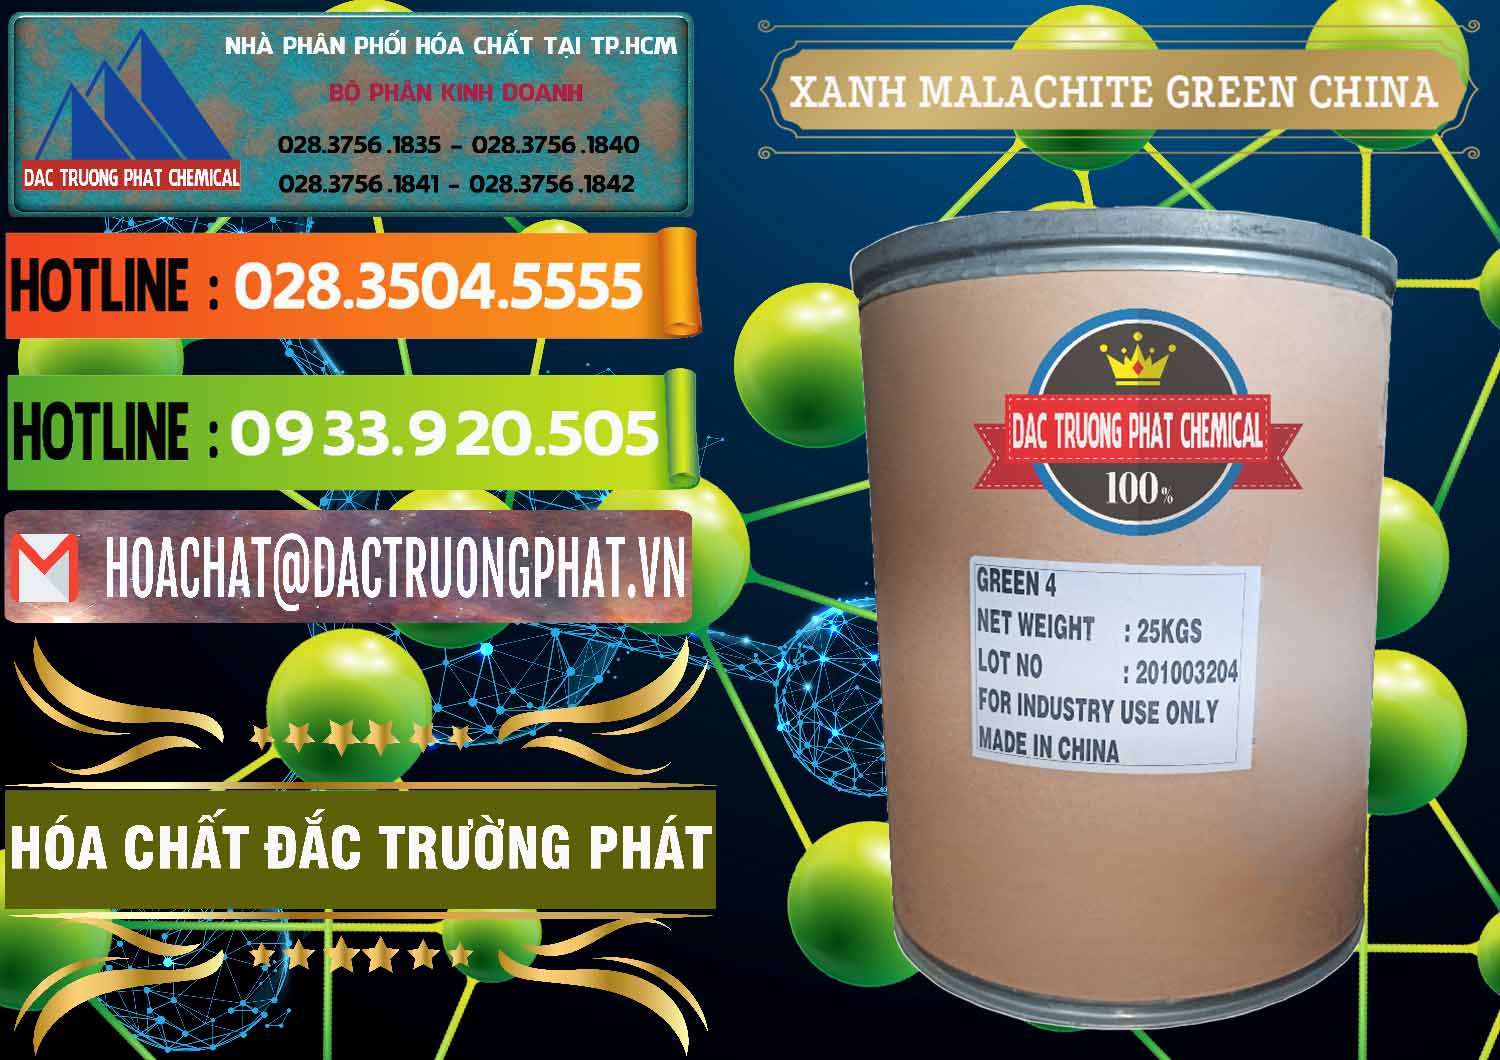 Đơn vị chuyên bán - cung cấp Xanh Malachite Green Trung Quốc China - 0325 - Phân phối & cung cấp hóa chất tại TP.HCM - cungcaphoachat.com.vn